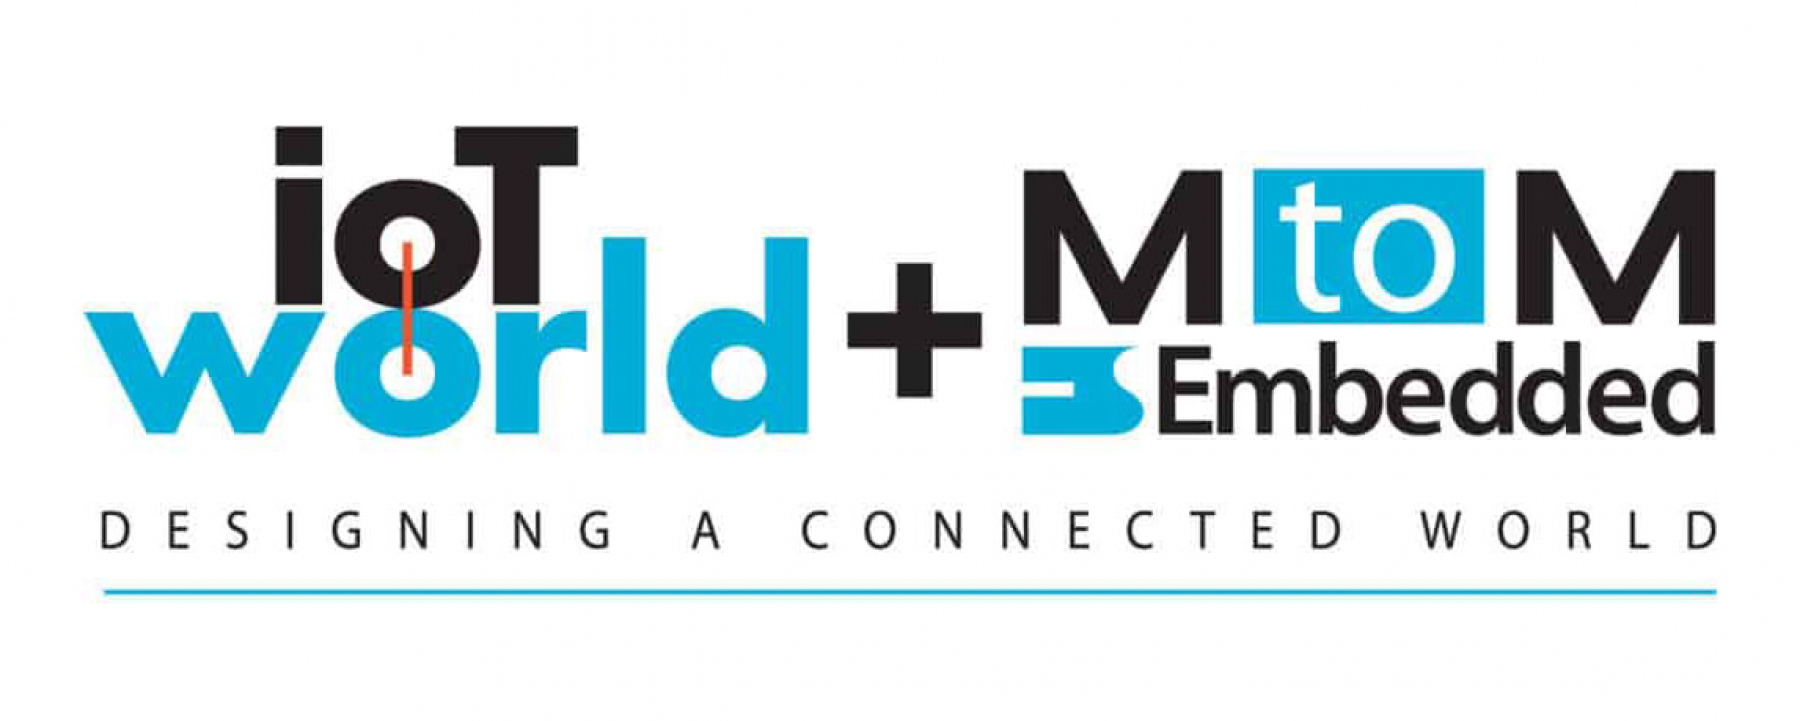 Salon IoT World - MtoM & Objets Connectés - Embedded, les 23 et 24 septembre 2020 à Paris Expo - Porte de Versailles, organisé par Groupe Solutions 